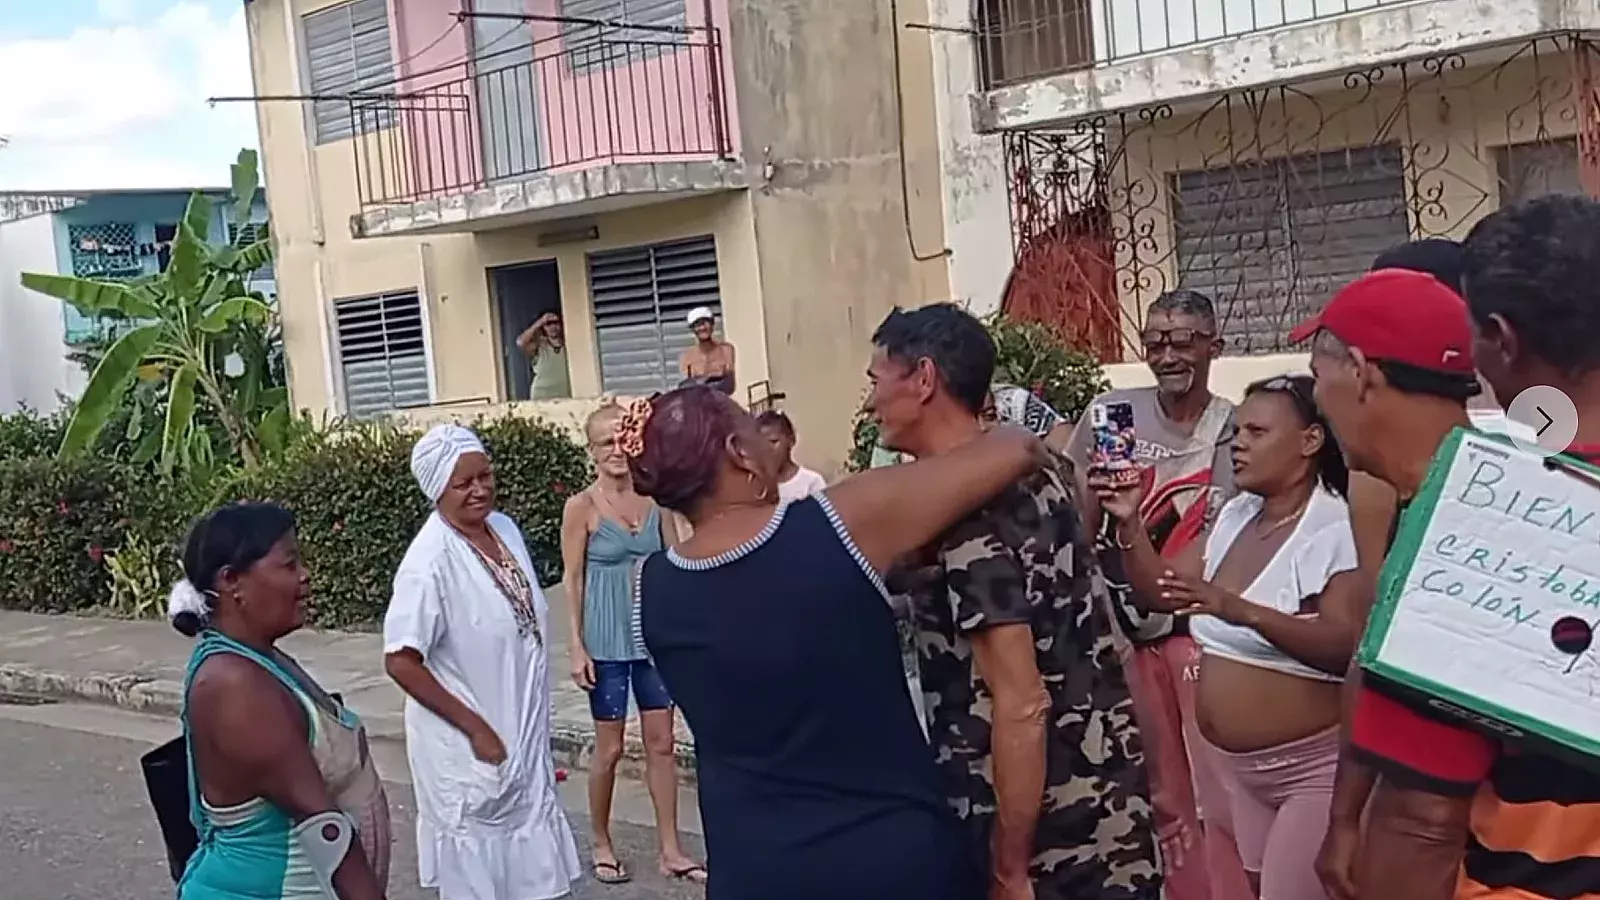 Recibimiento a desparecidos en Cuba